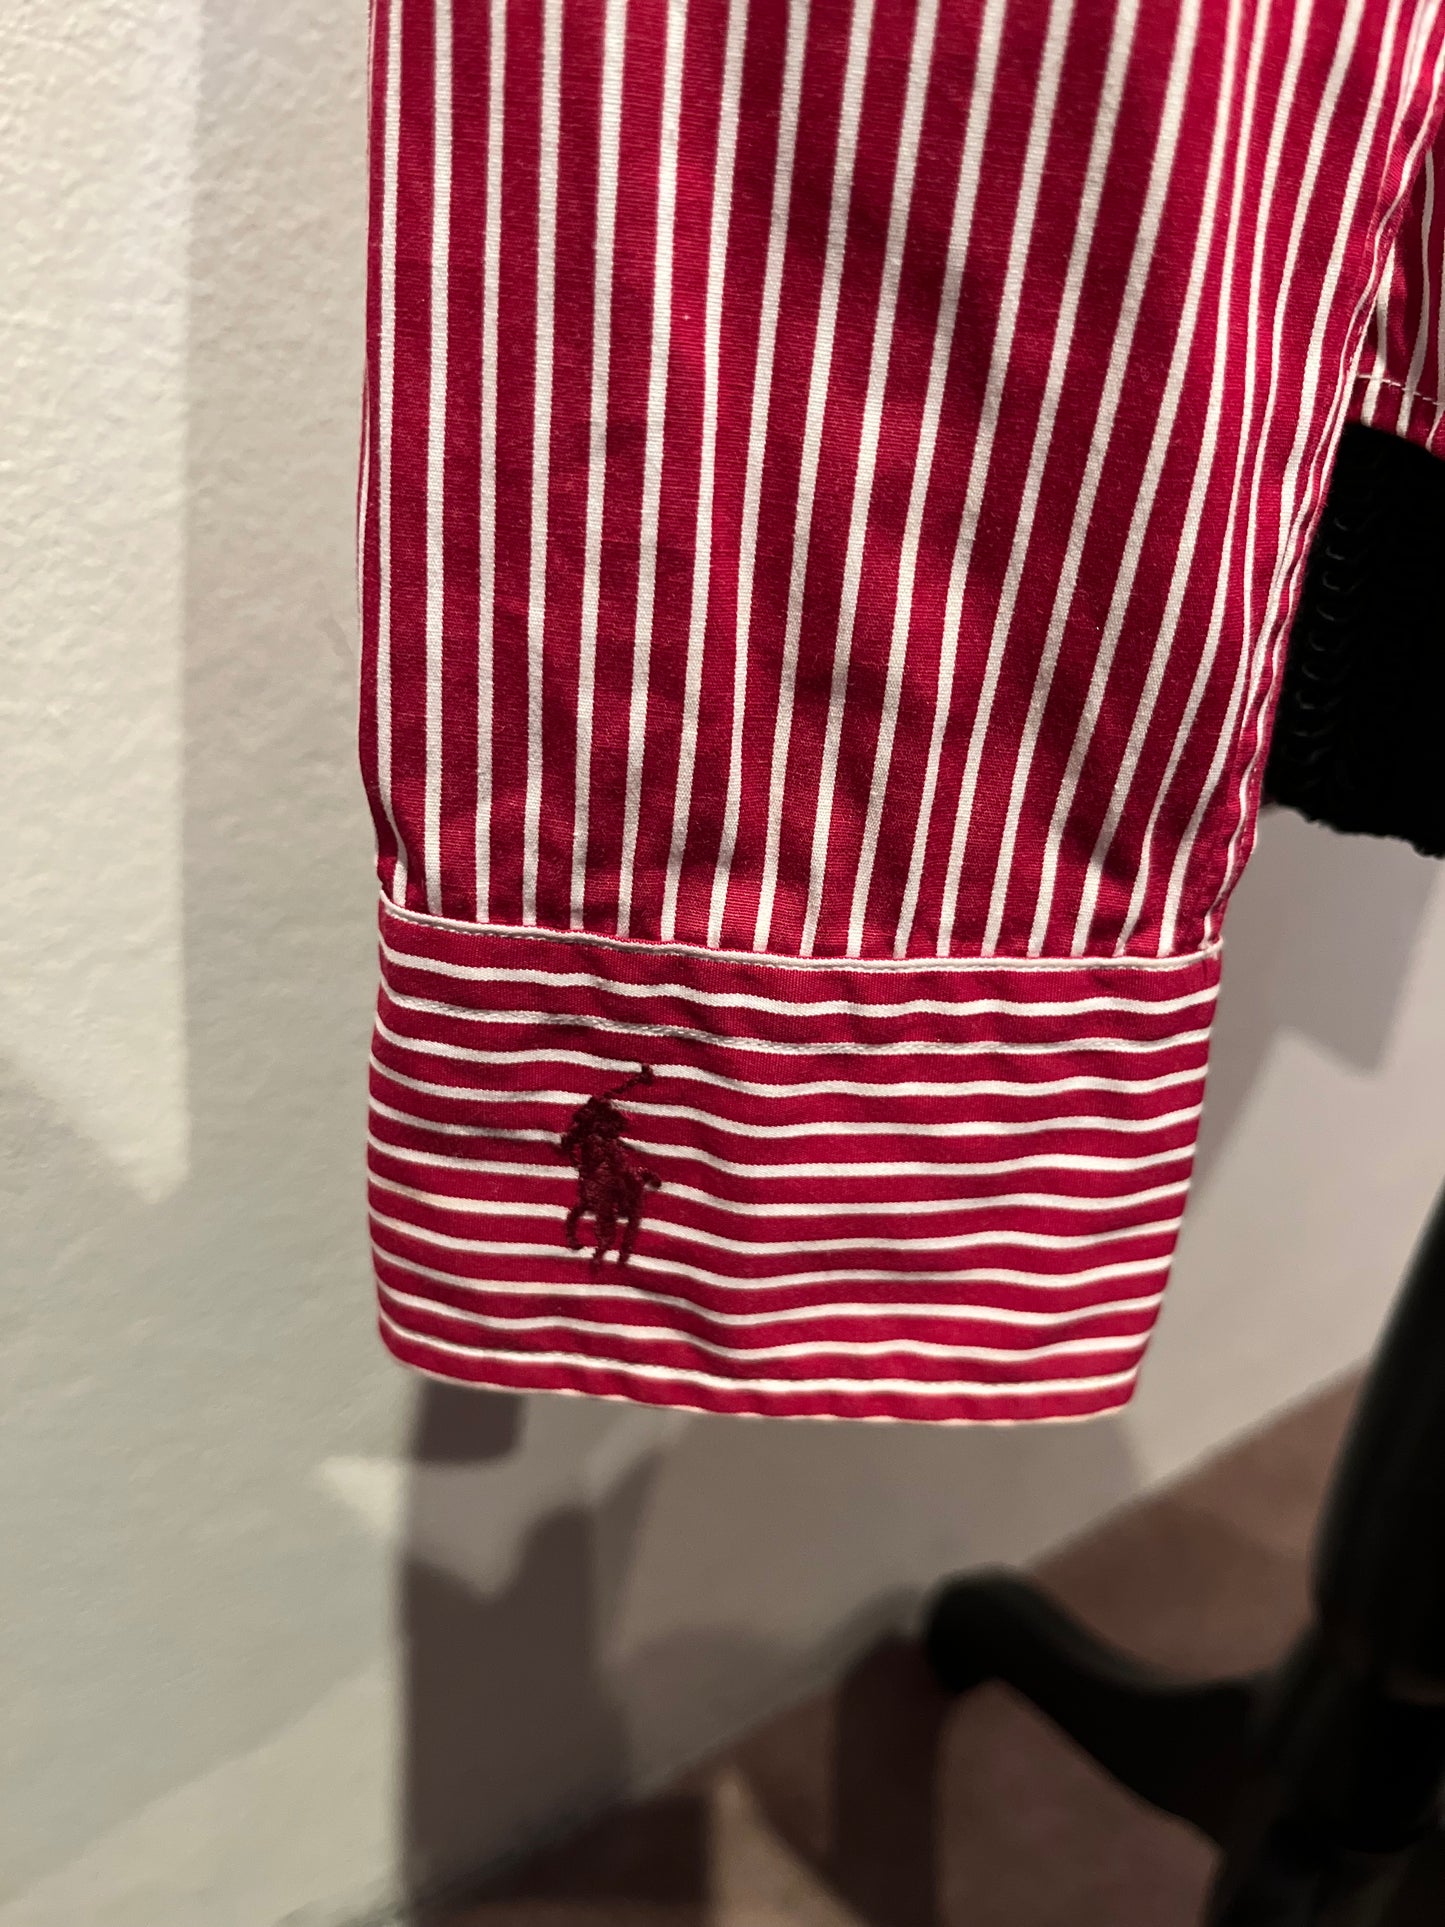 Ralph Lauren Women’s 100% Cotton Red White Stripe Shirt Size 4 Slim Fit